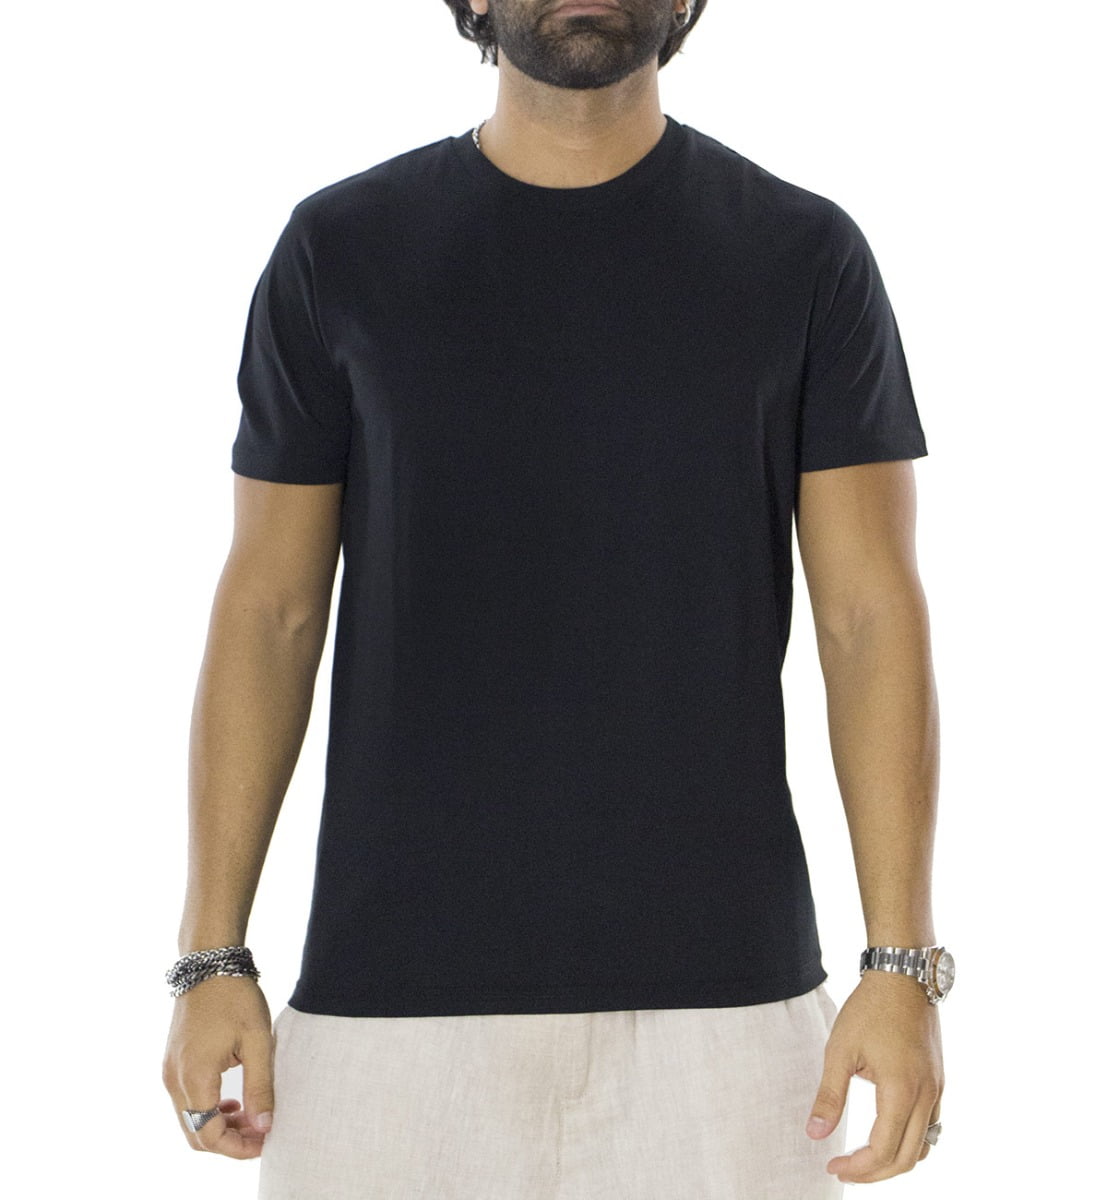 T-shirt da uomo in cotone organico tinta unita nera regular fit elasticizzata girocollo